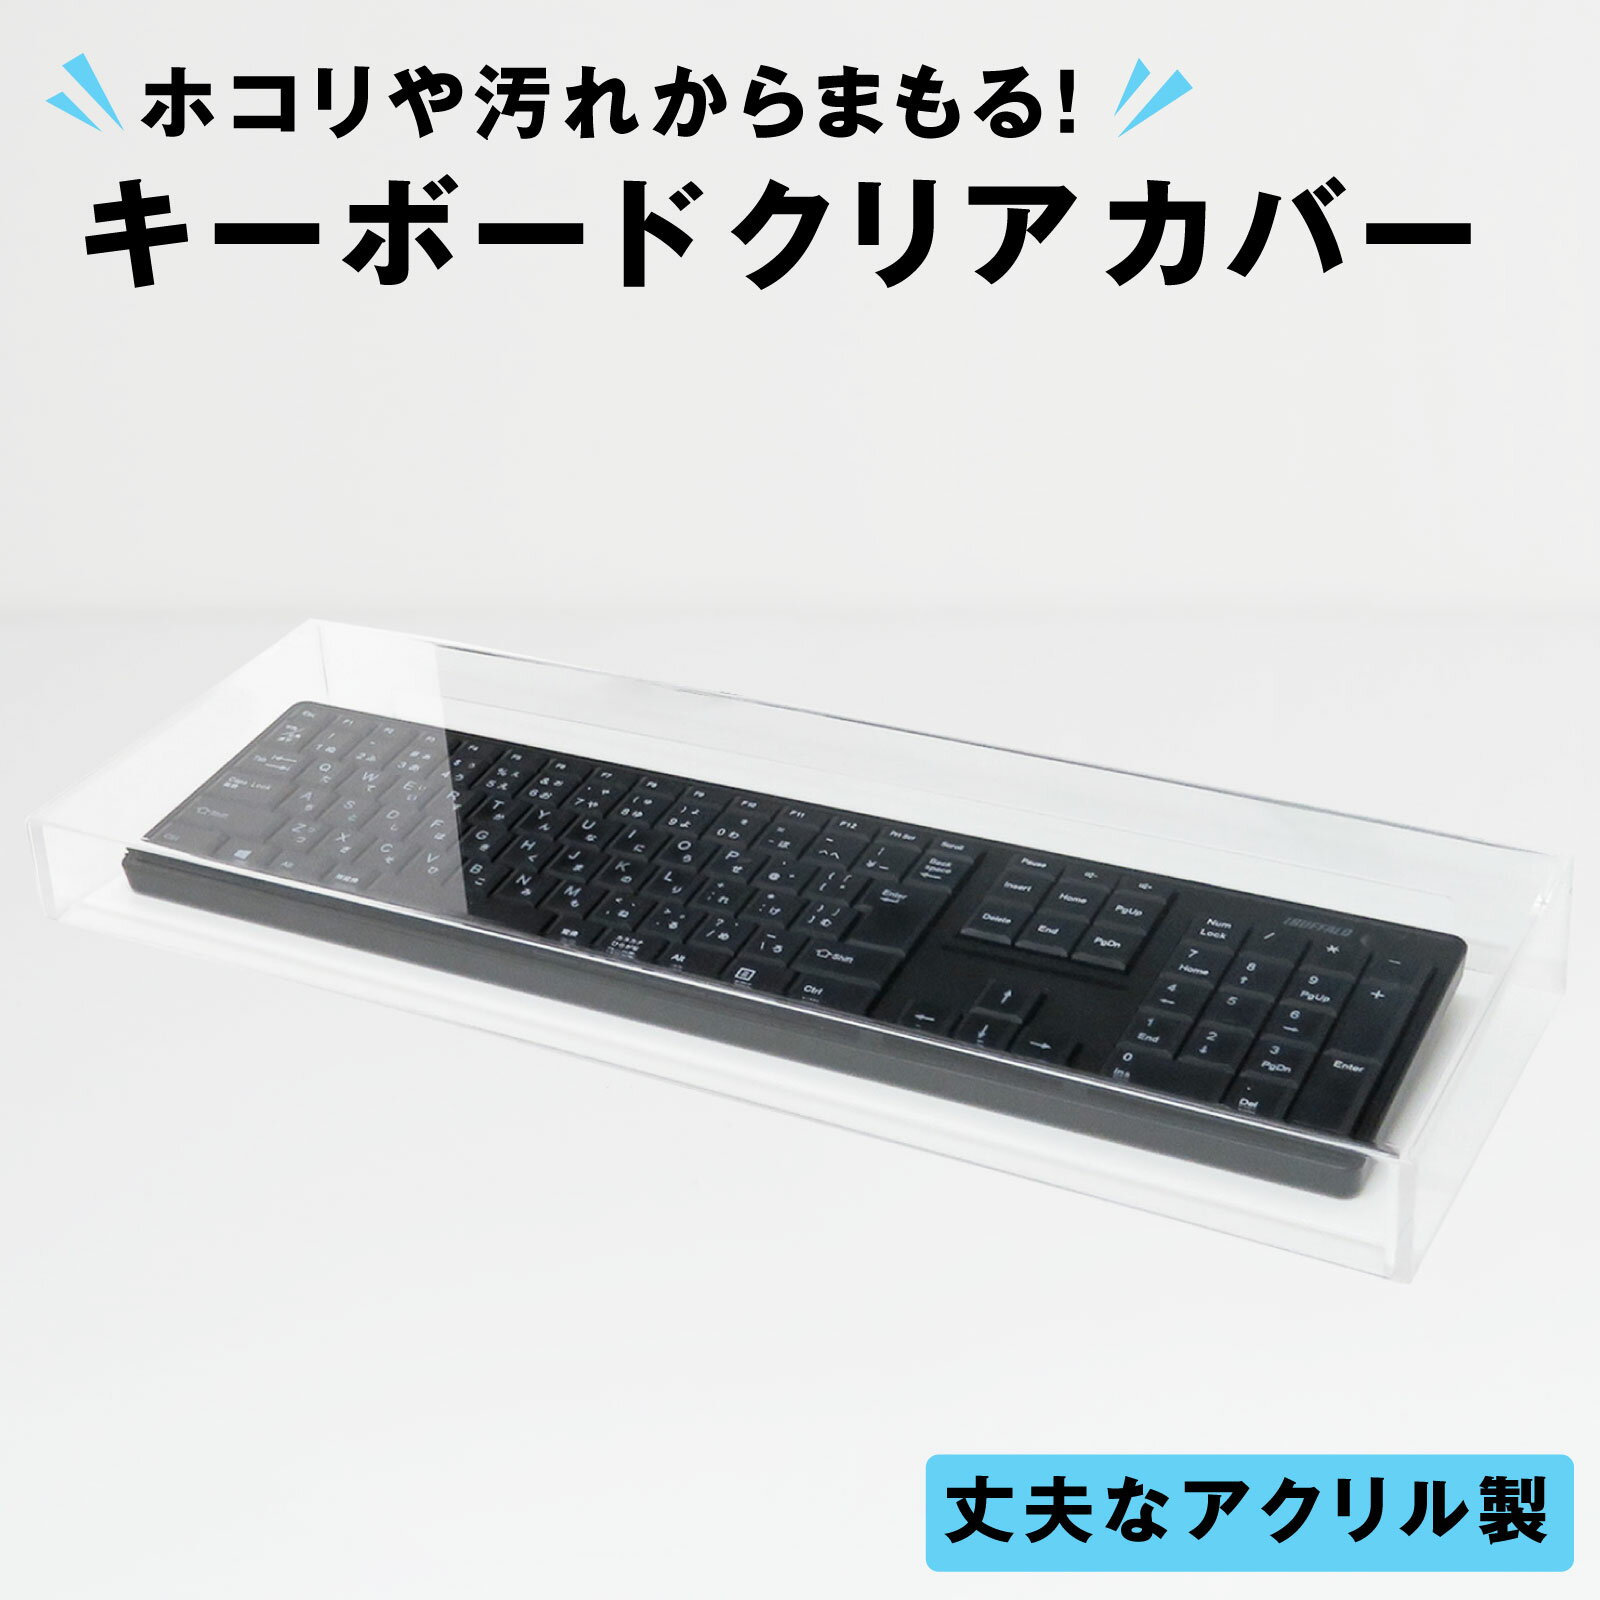 【クーポン配布中】サンワサプライ hp日本語版スタンダードスリムキーボード用シリコンキーボードカバー FA-HP6N